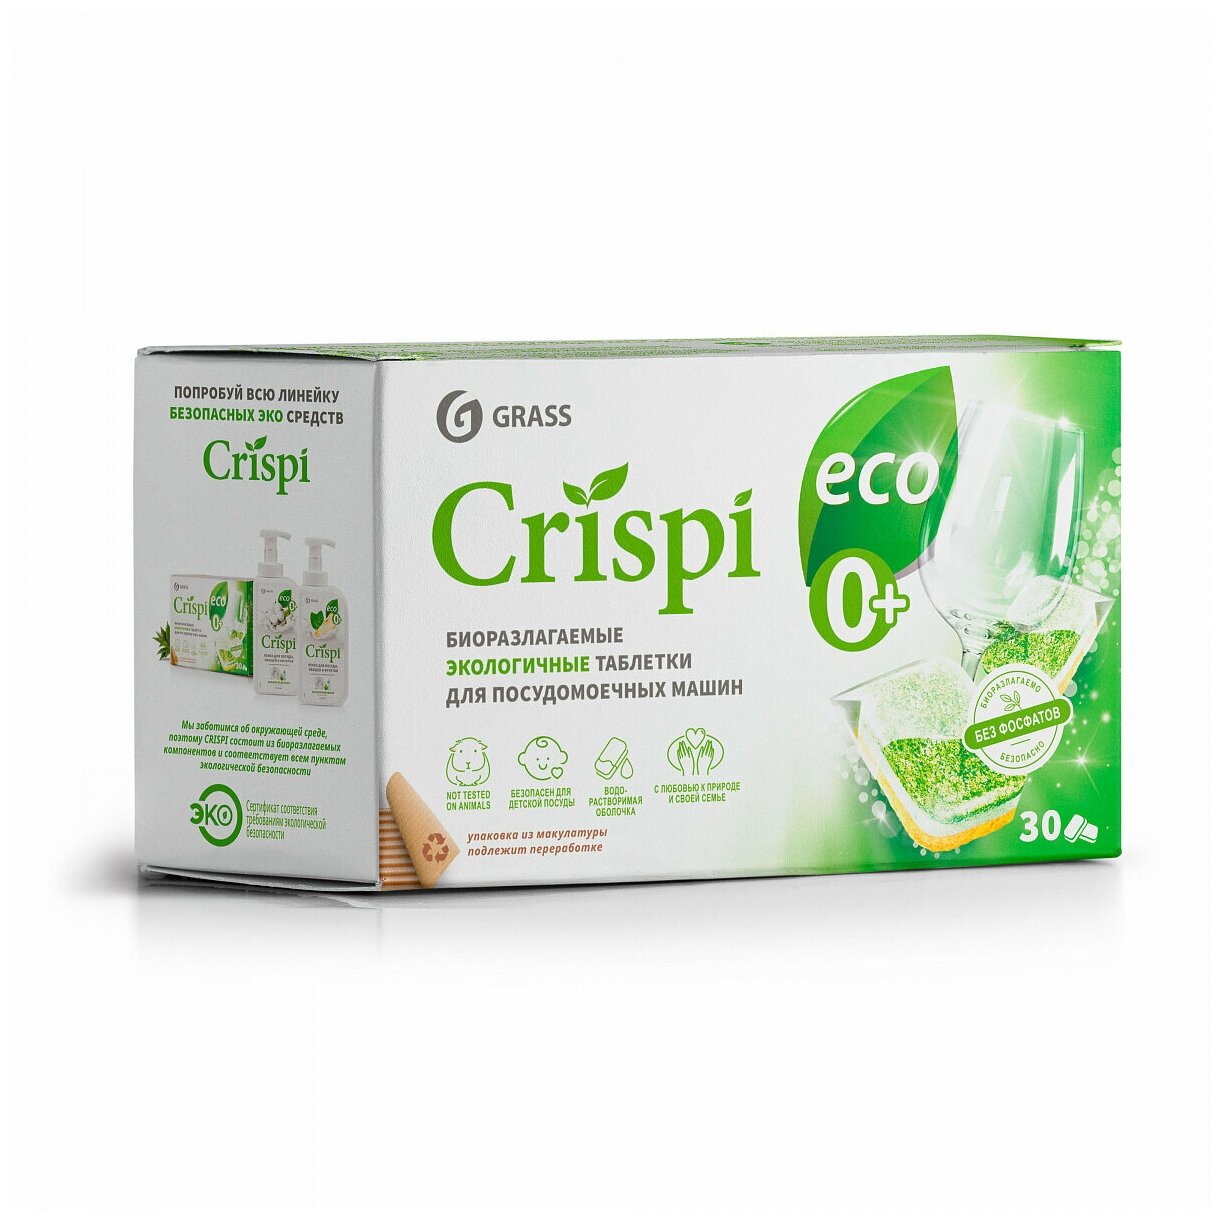 GRASS/ Экологичные таблетки для посудомоечных машин "CRISPI", капсулы для ПММ, Криспи для посудомойки,30шт. - фотография № 7